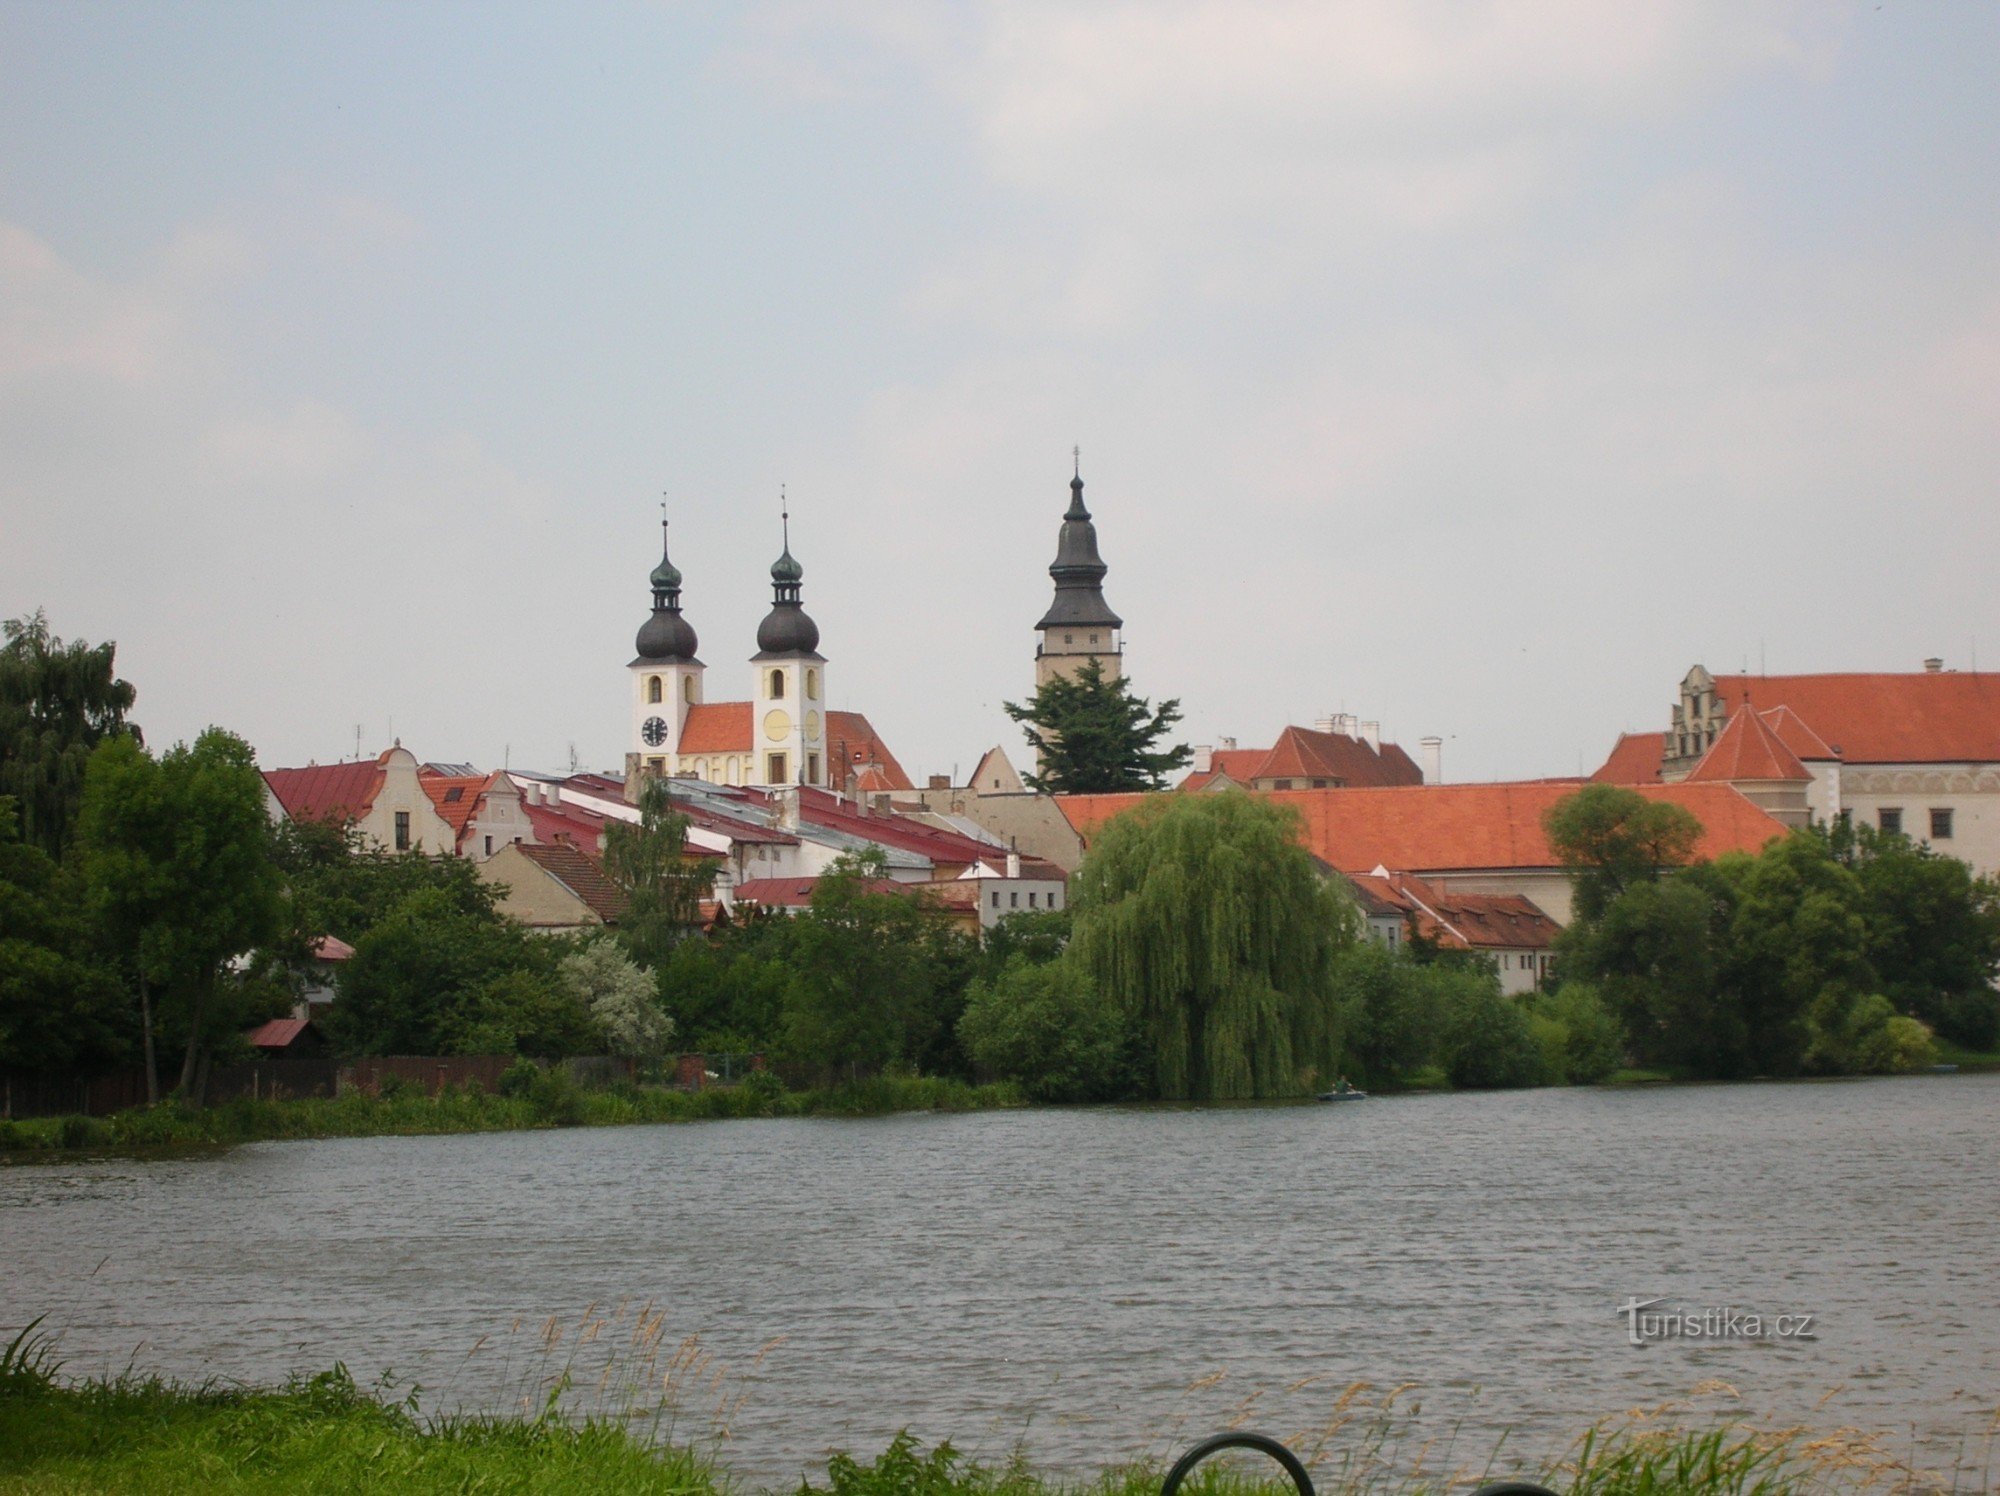 Pogled na grad Telč